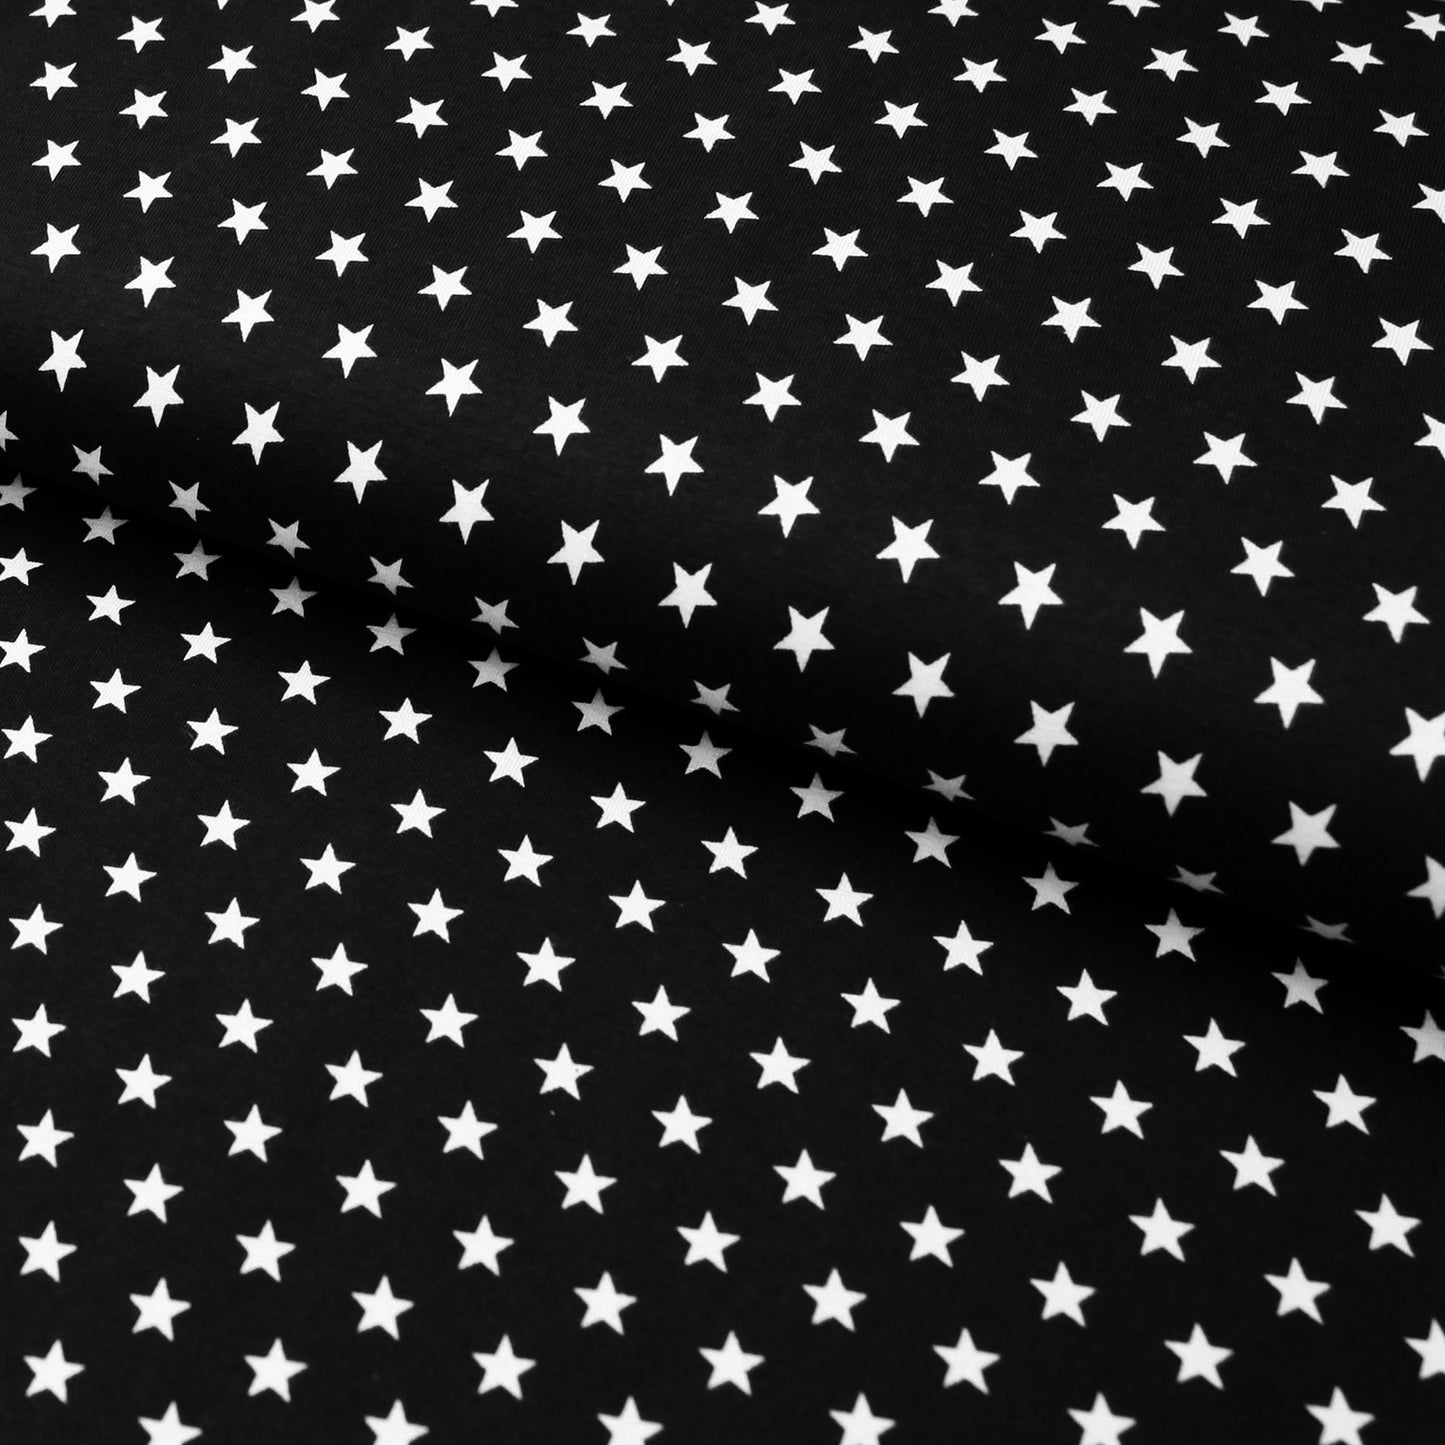 Baumwolljersey "mit 1cm kleinen, weißen Sternen" - in vielen Farben - Stoffe Kudellino